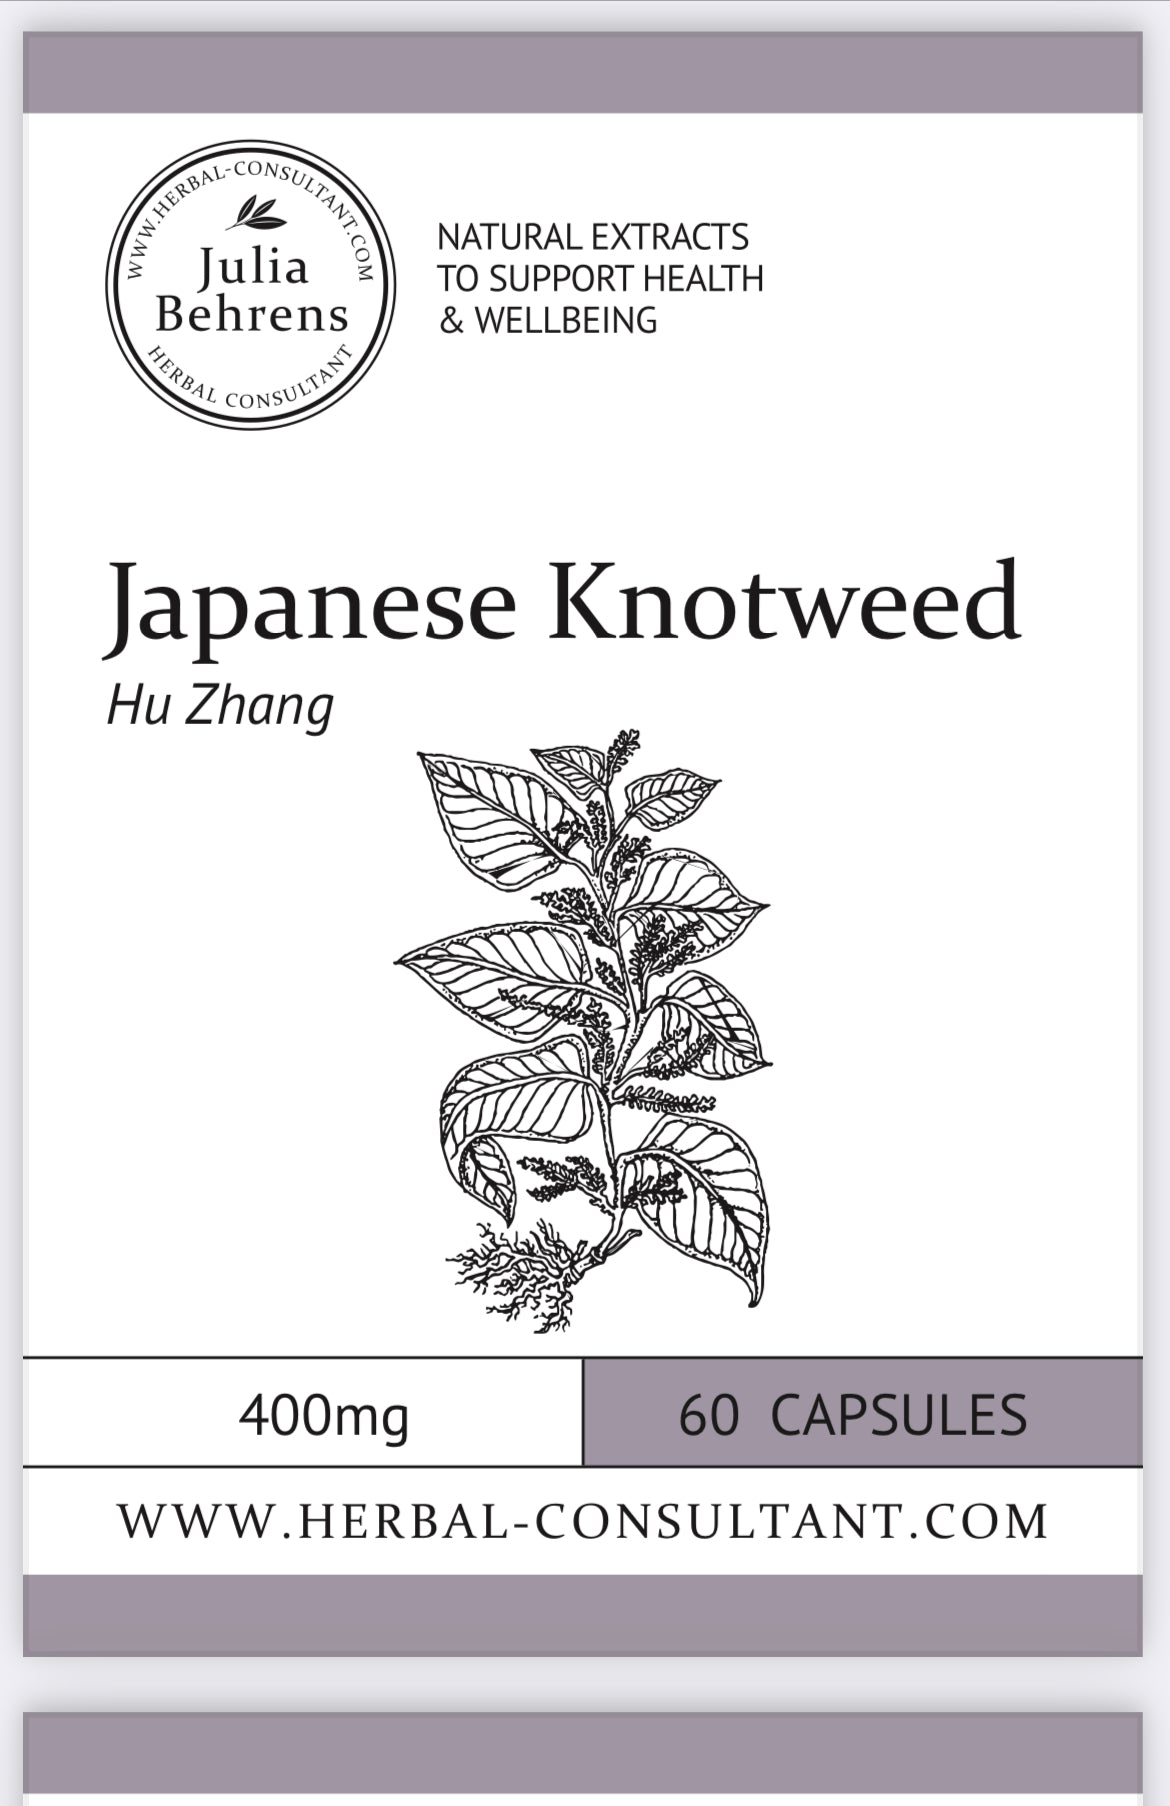 Japanese Knotweed capsules  by Julia Behrens